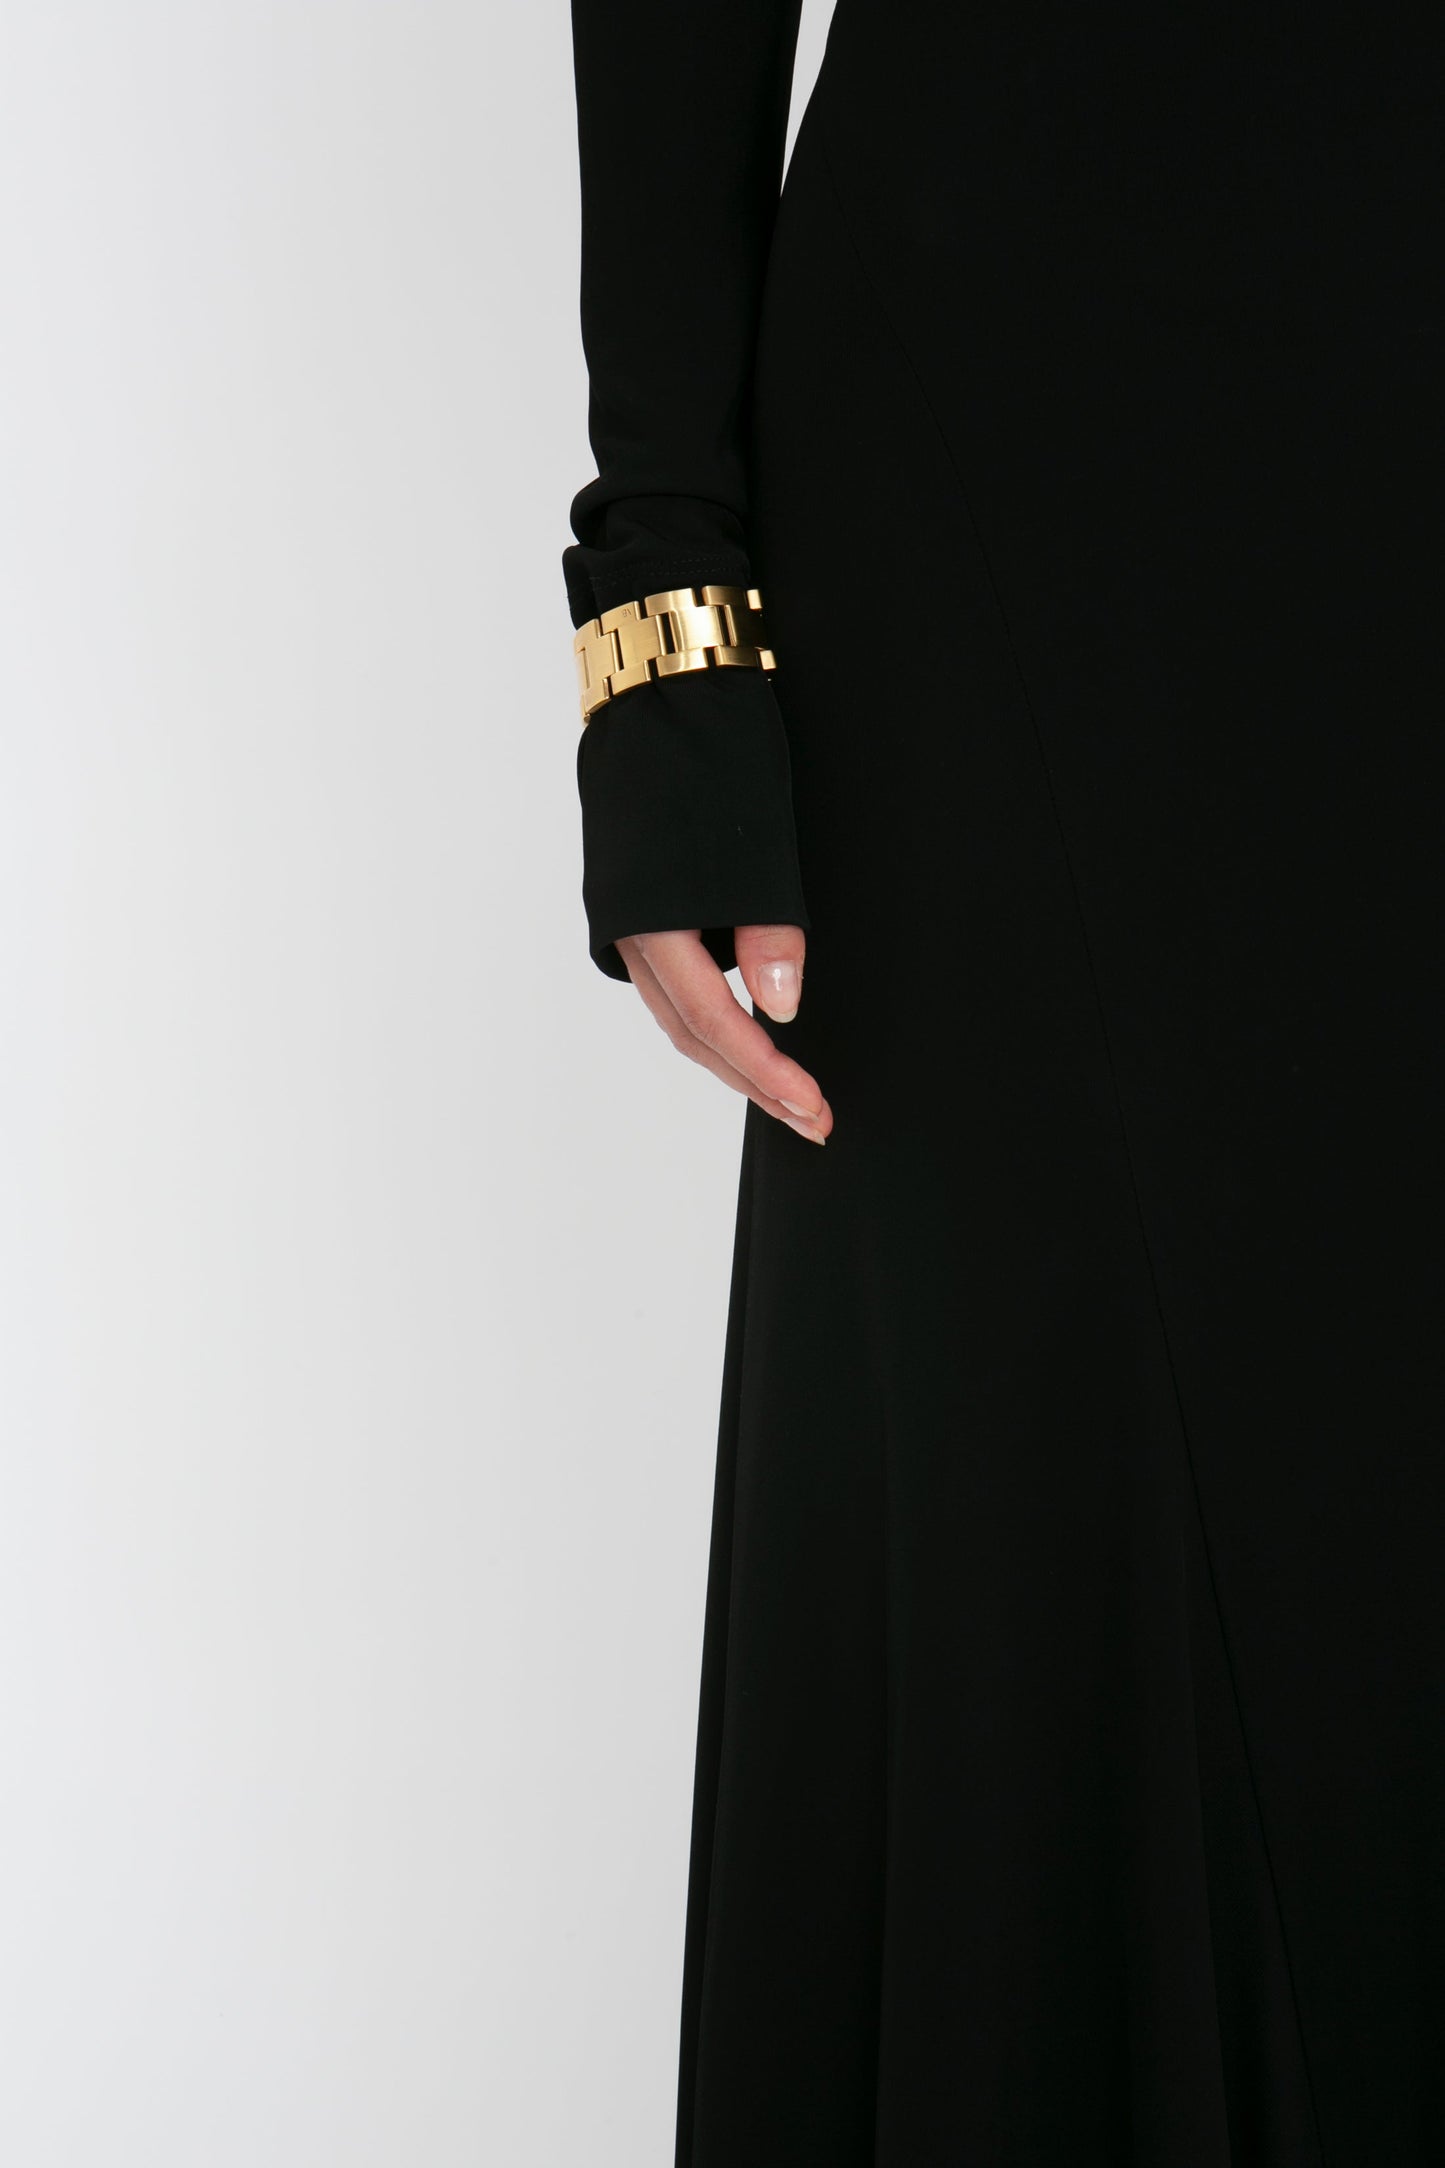 Tie Detail Floor-Length Dress in Black